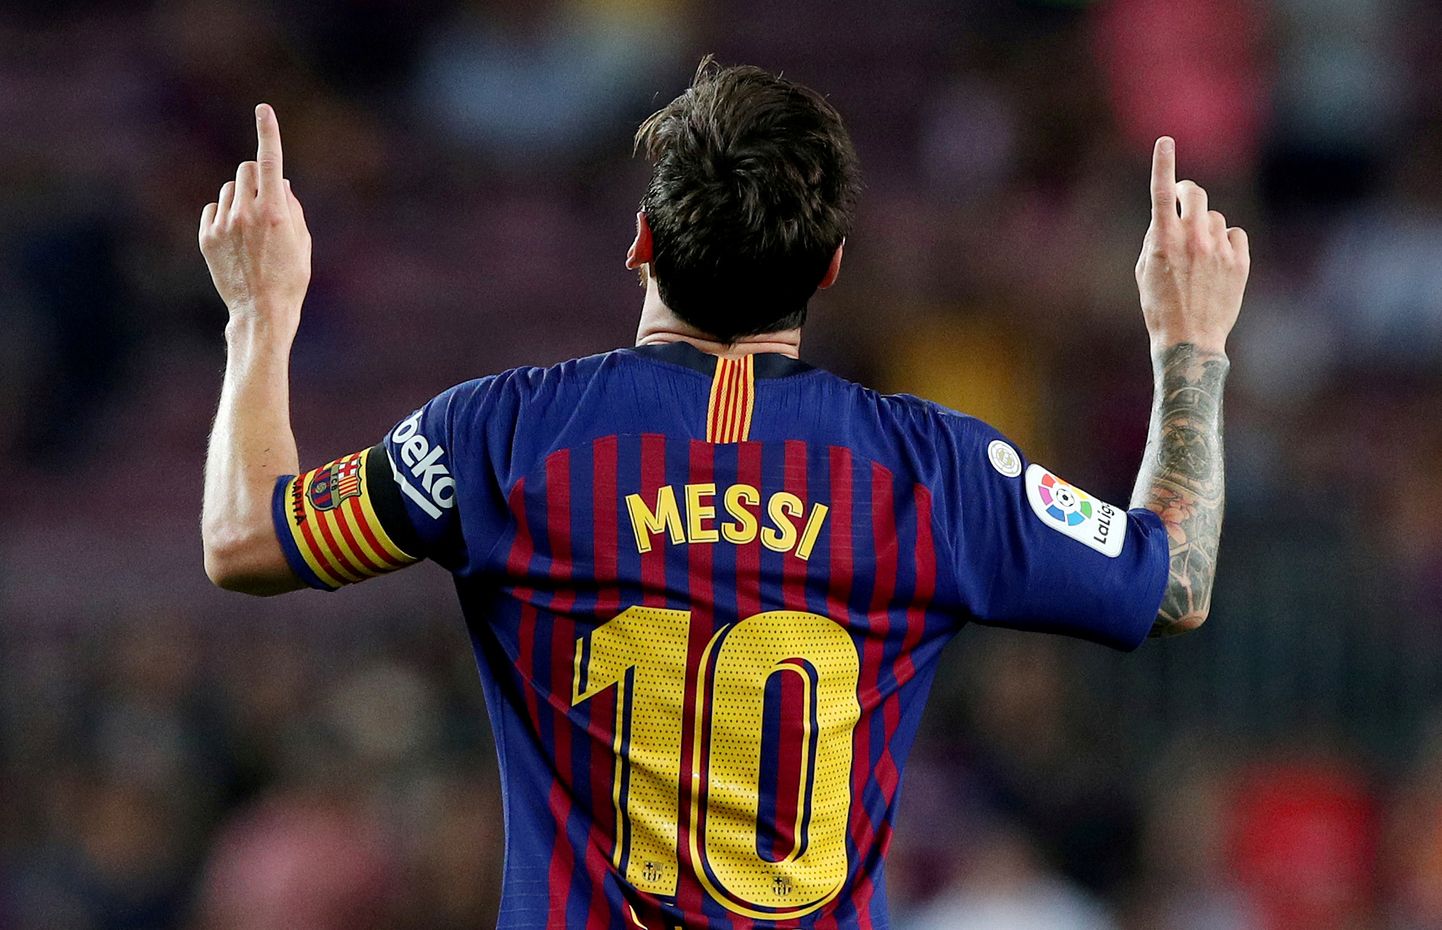 Millise klubi särgil ilutseb Messi nimi järgmisel hooajal on praegu raske ennustada.